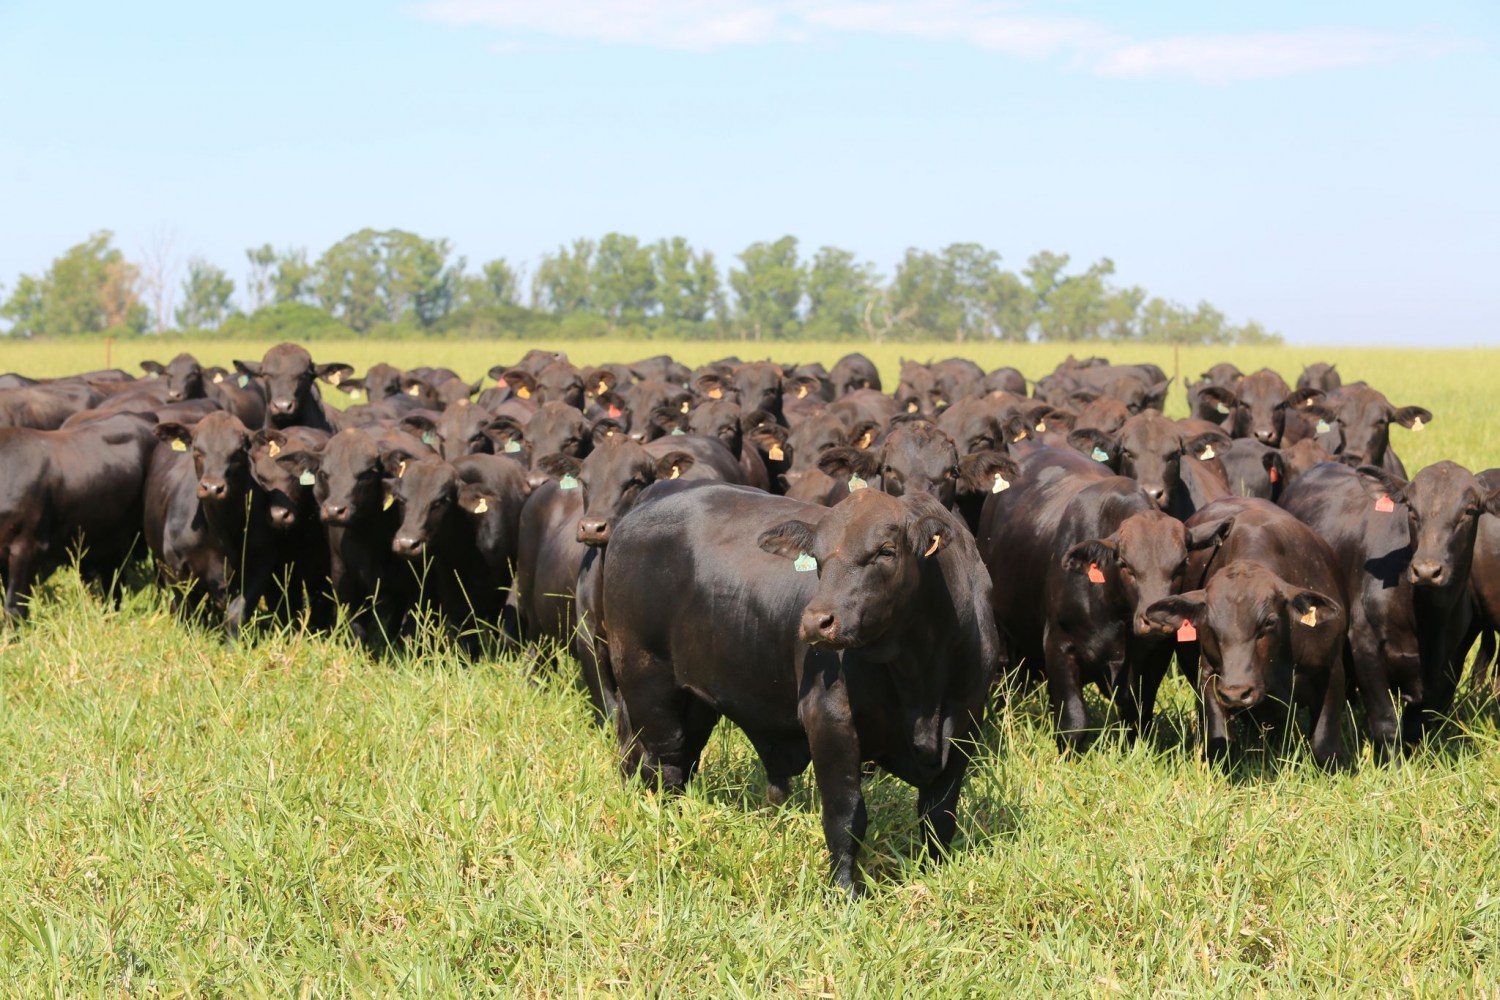 Com mais gado que gente, Montana consome carne bovina brasileira; Veja motivo